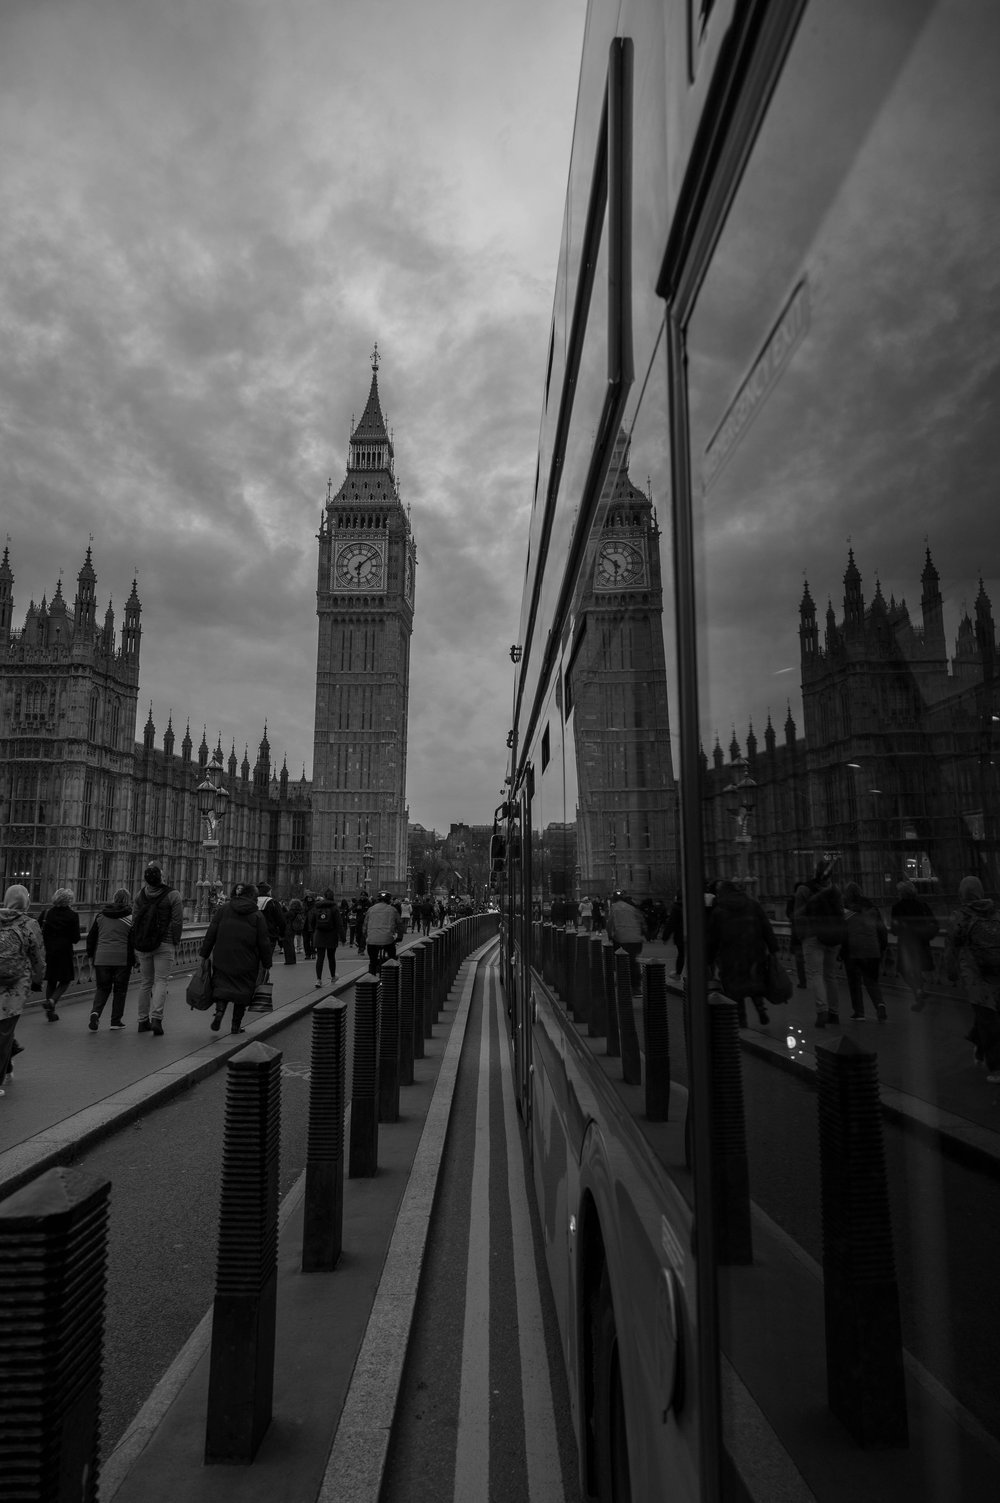 Der Elizabeth Tower bzw. Big Ben schwarz weiß in Spiegelung eines Doppeldeckerbusses in London